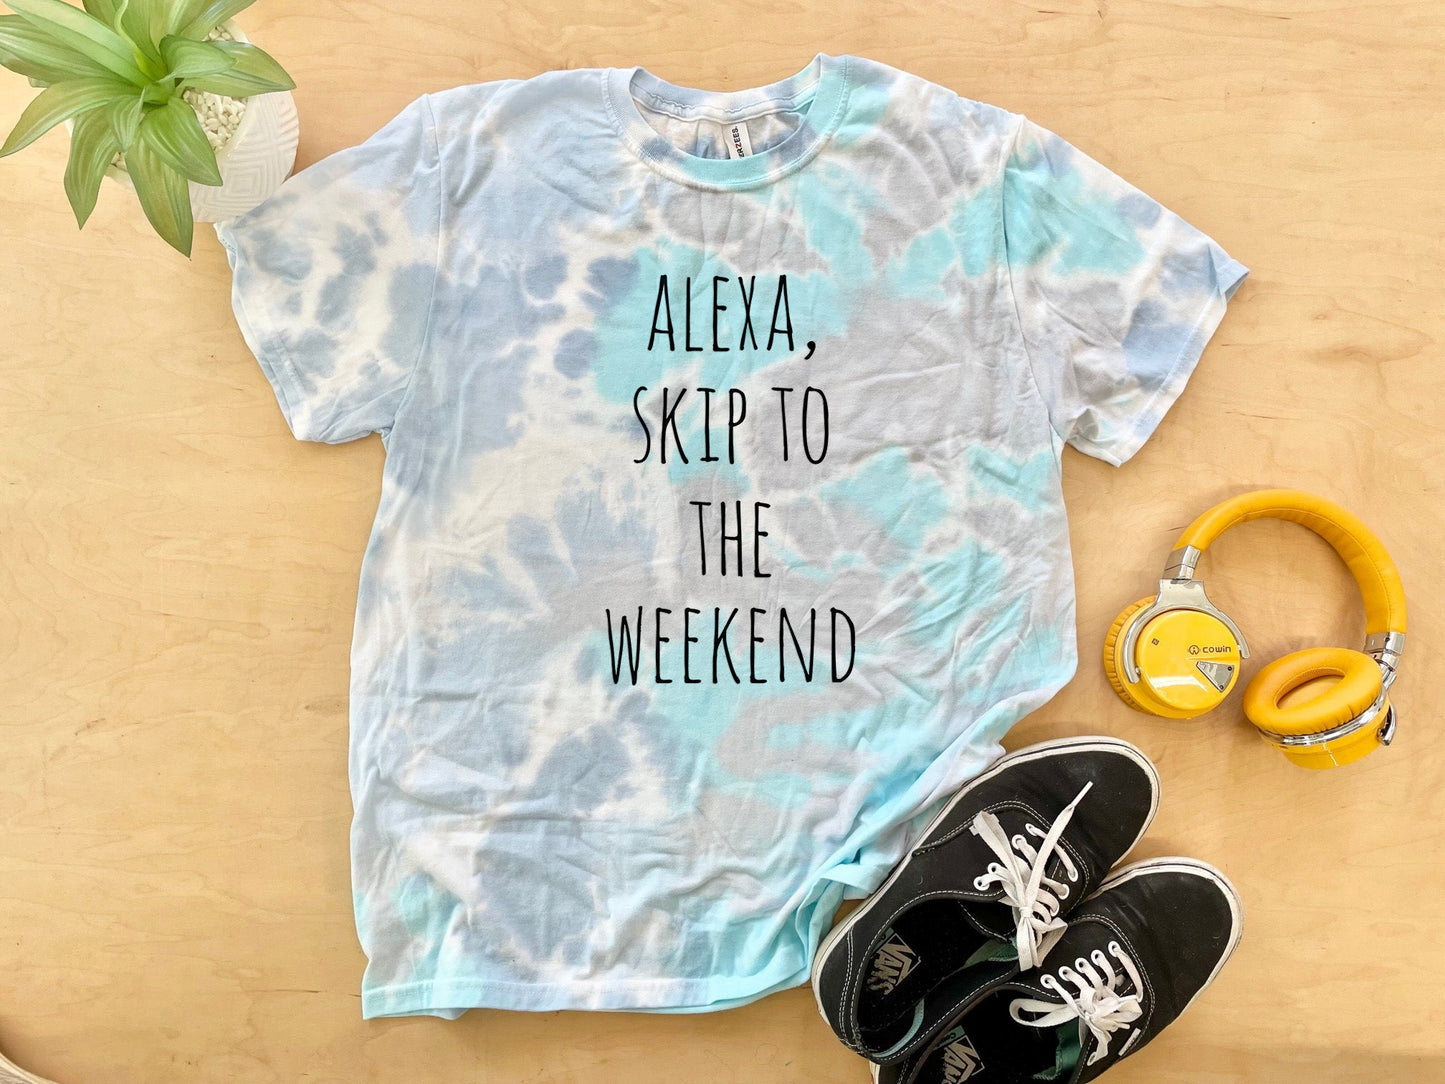 Alexa, Skip to the Weekend - Mens/Unisex Tie Dye Tee - Blue